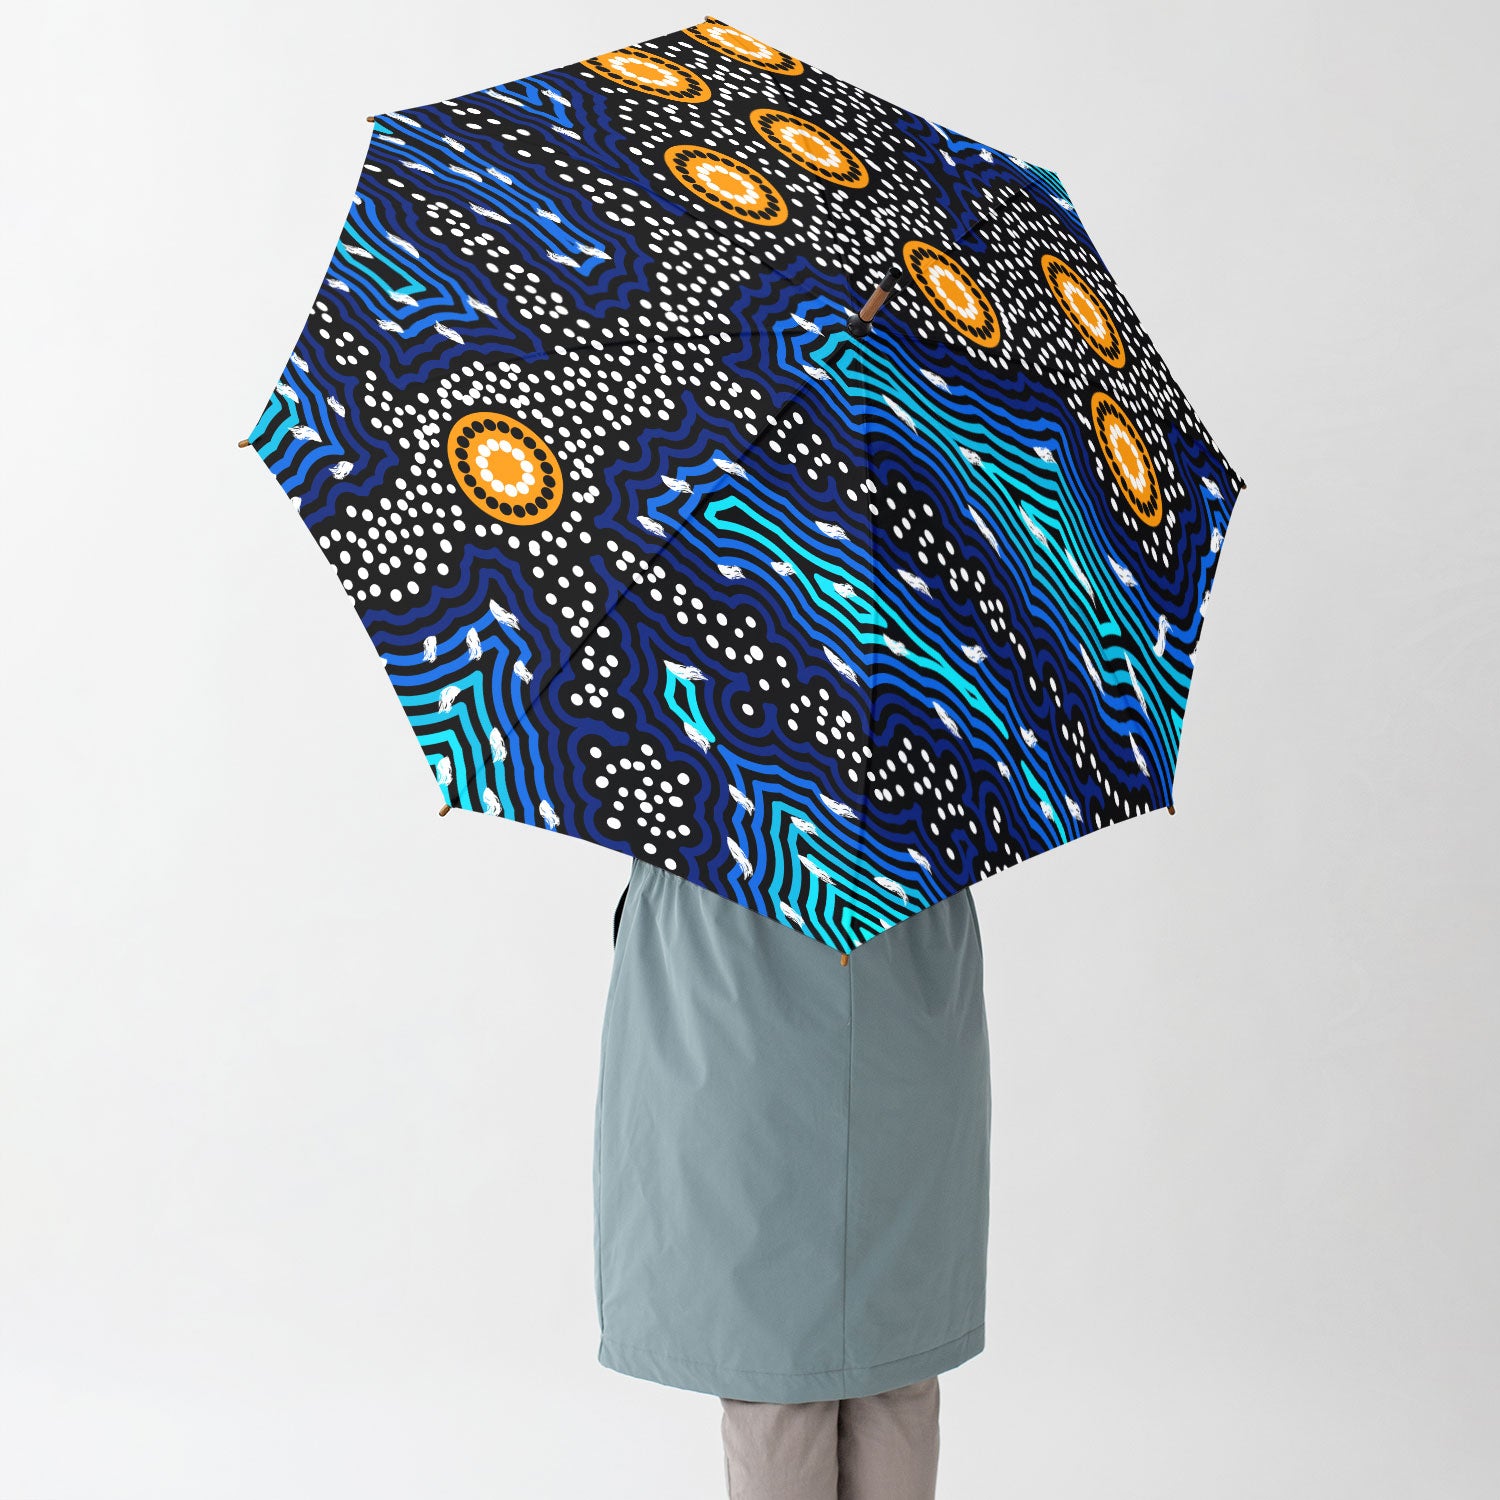 Australia Aboriginal Umbrella Aboriginal Inspired background of dreaming art Umbrella